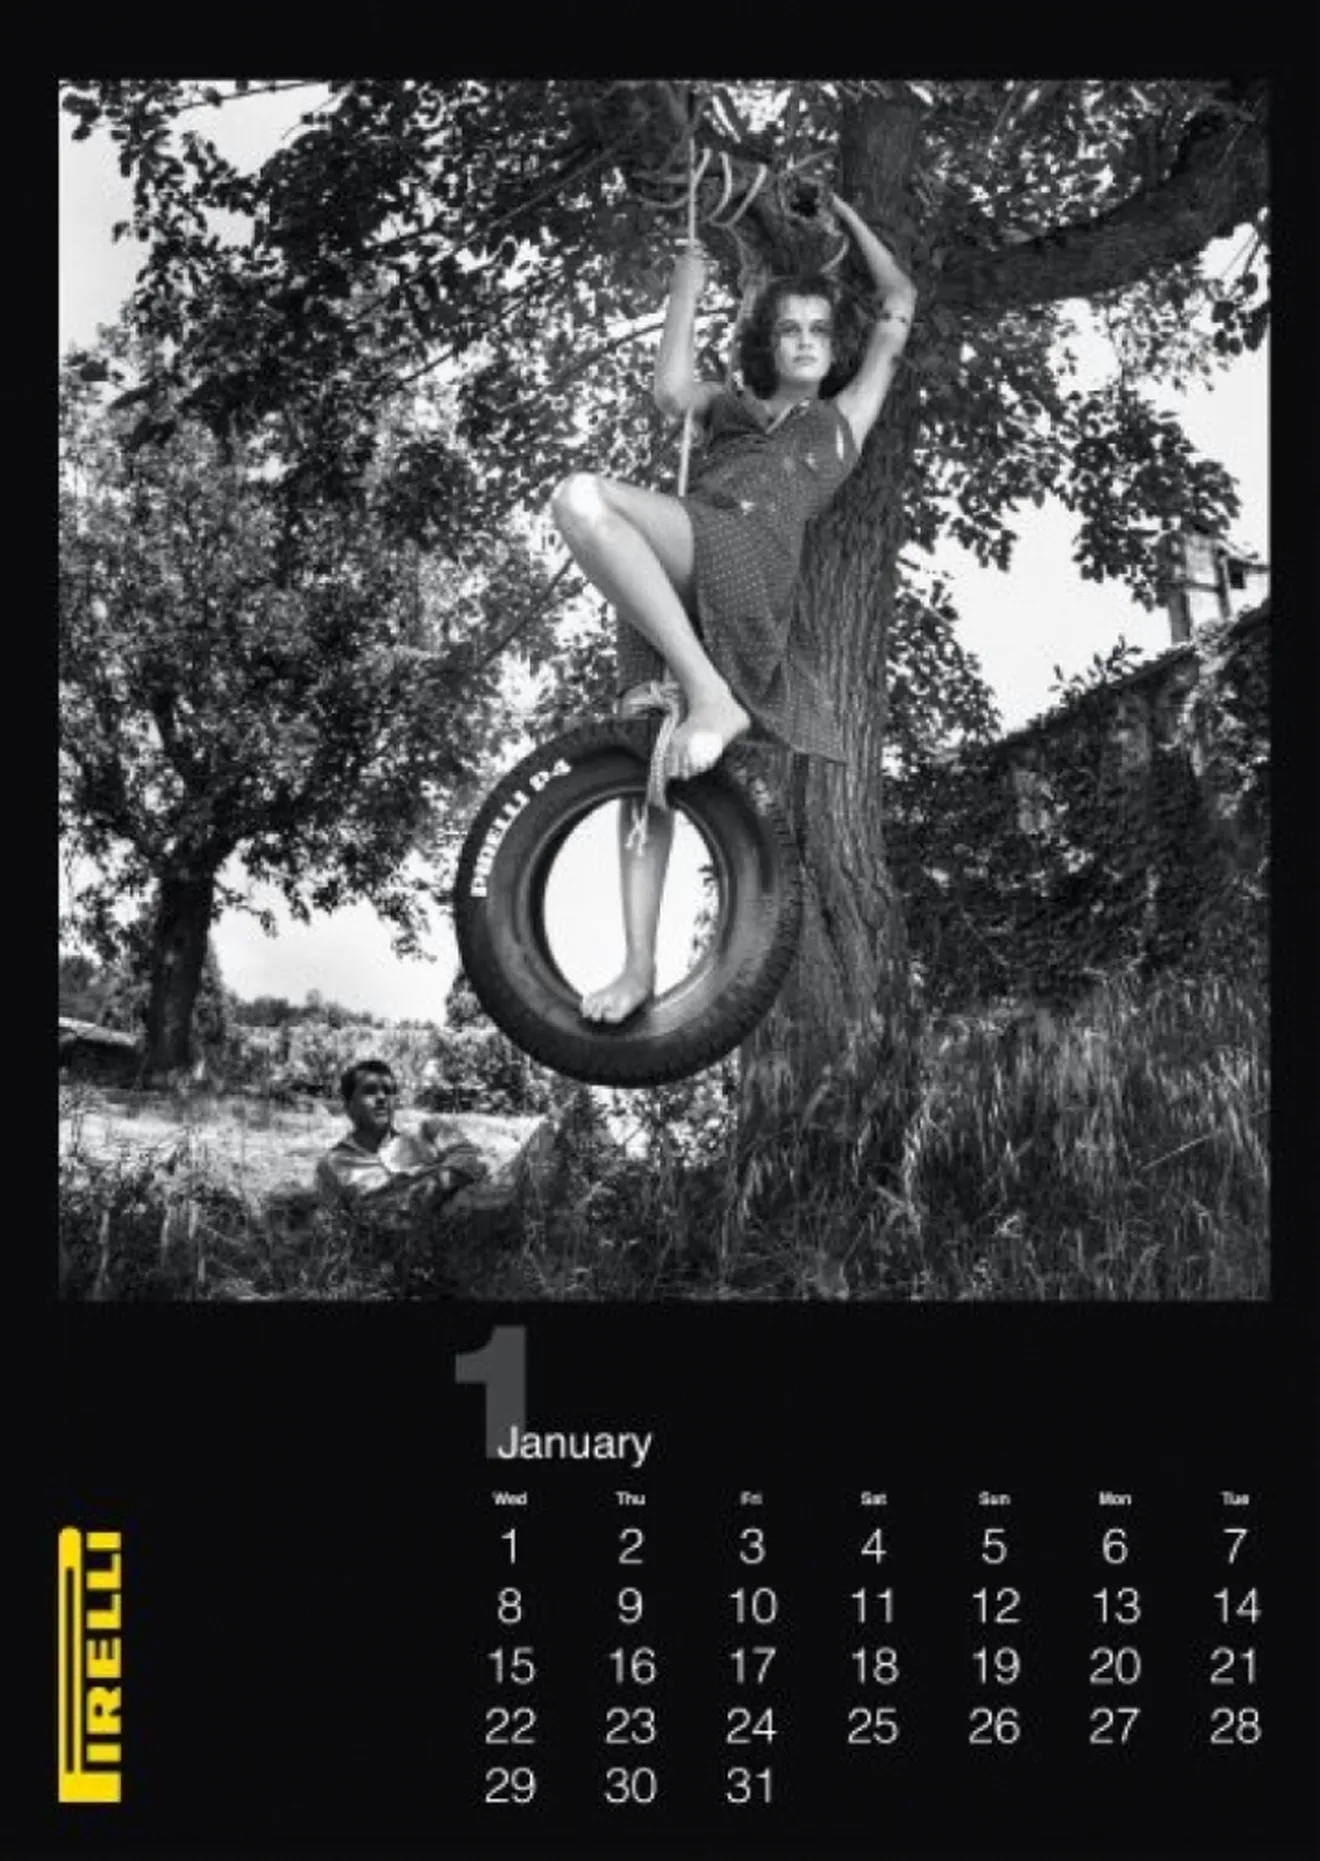 El Calendario Pirelli 2014 estará hecho con fotografías de 1986